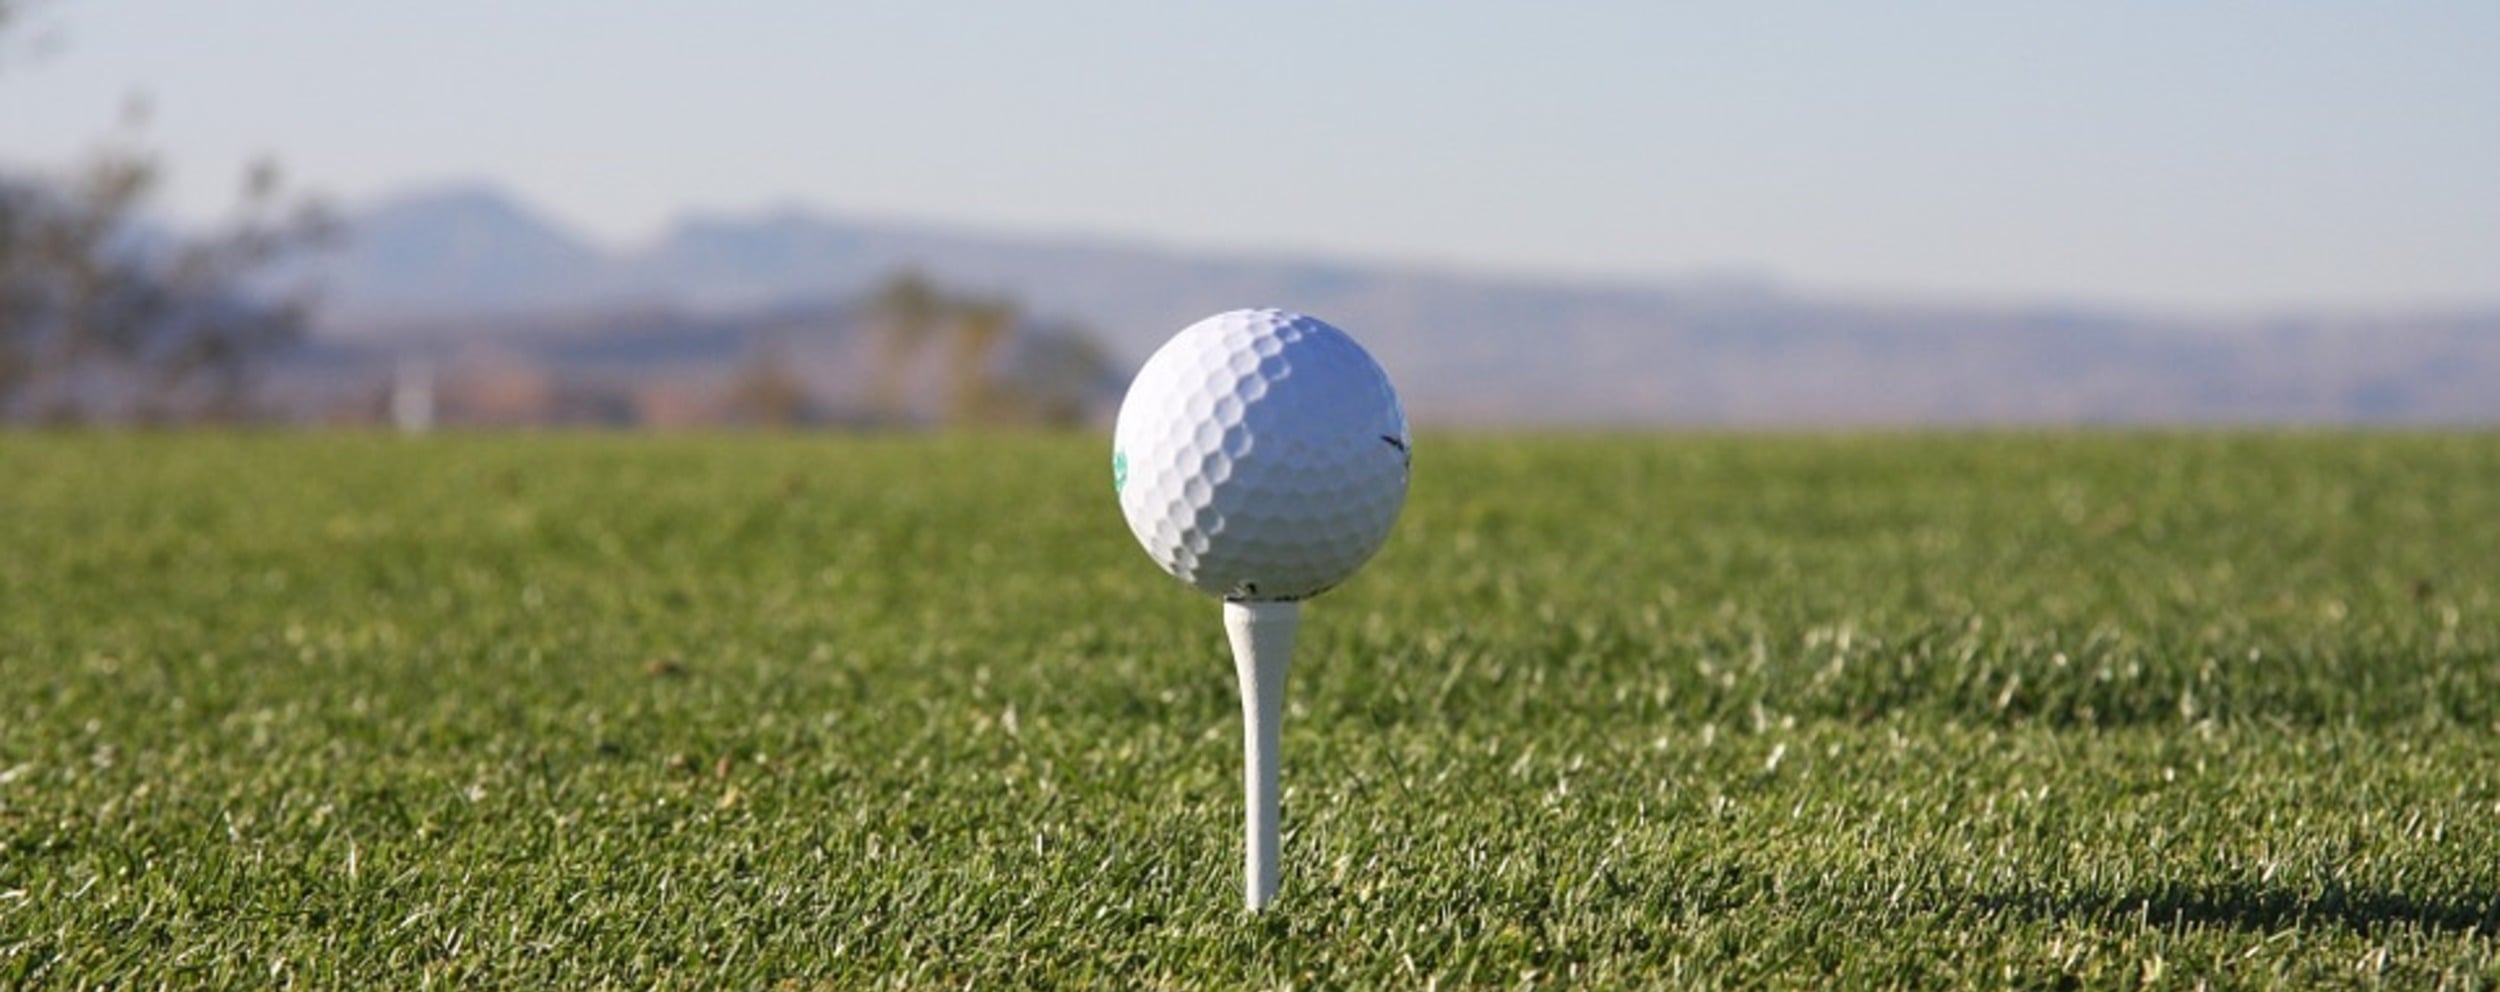 Wichtiges & hilfreiches Golf Equipment